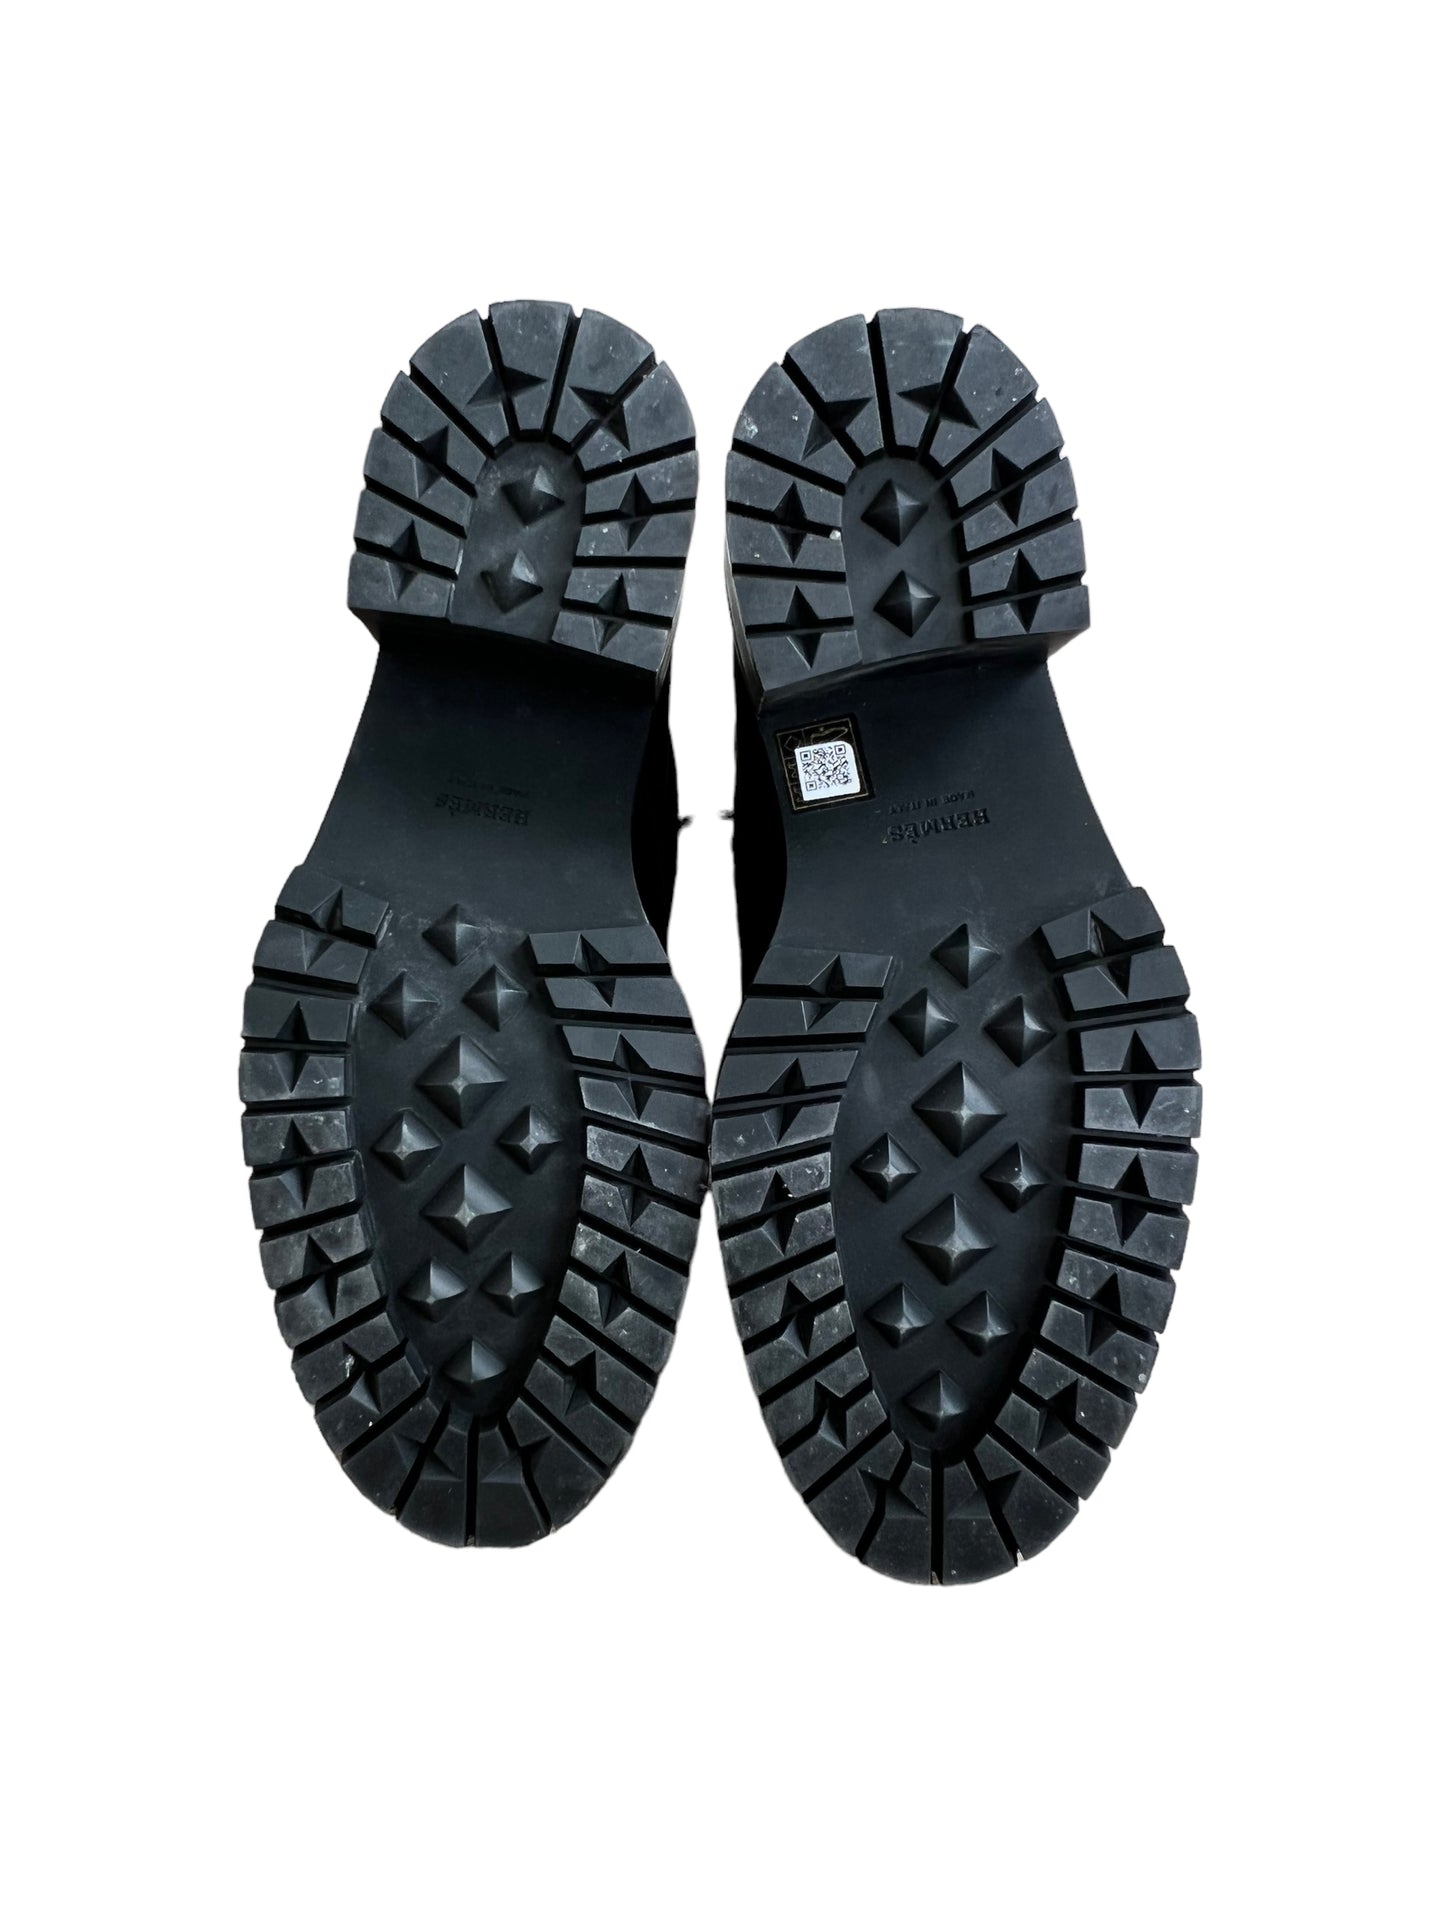 Hermès Bridge Women’s Leather Ankle Boots